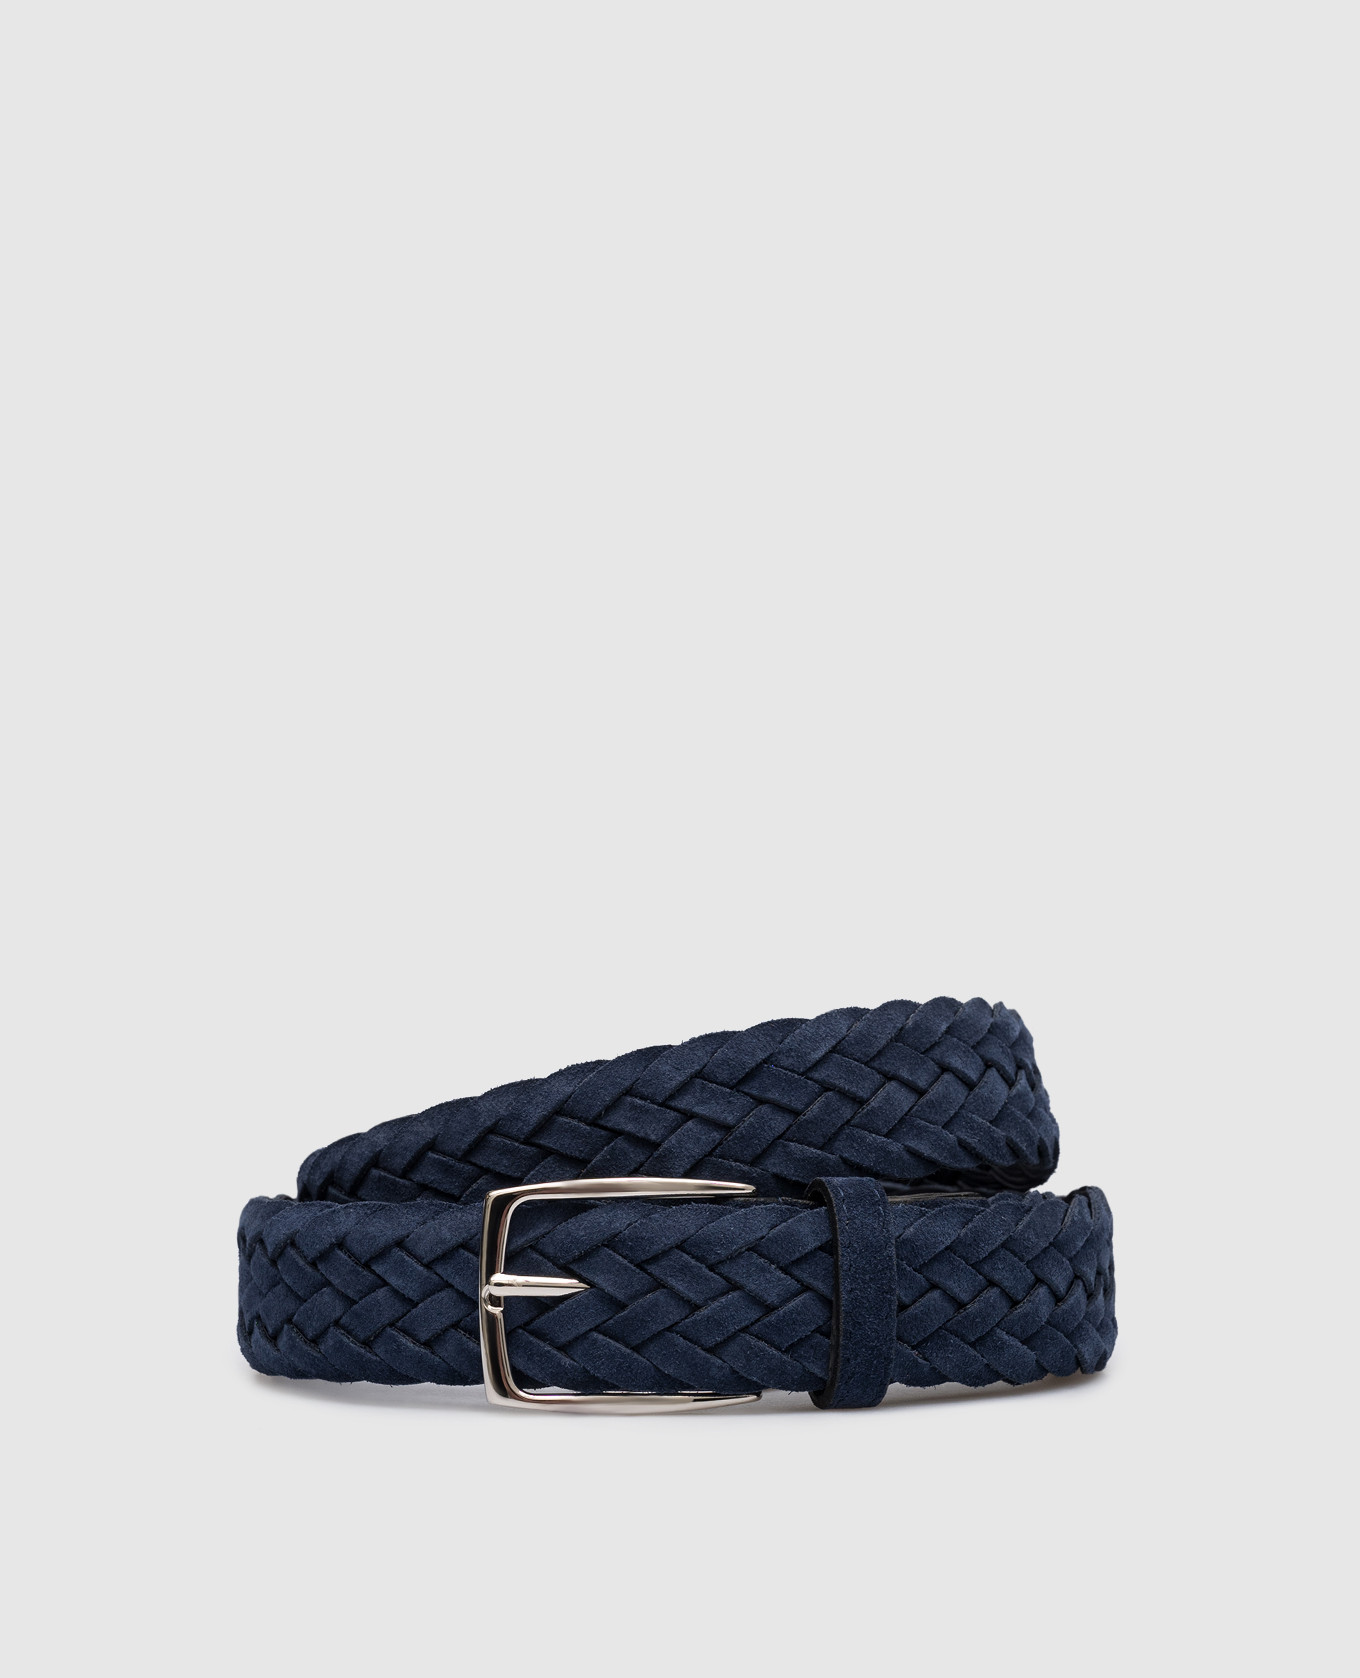 Blue suede braided belt